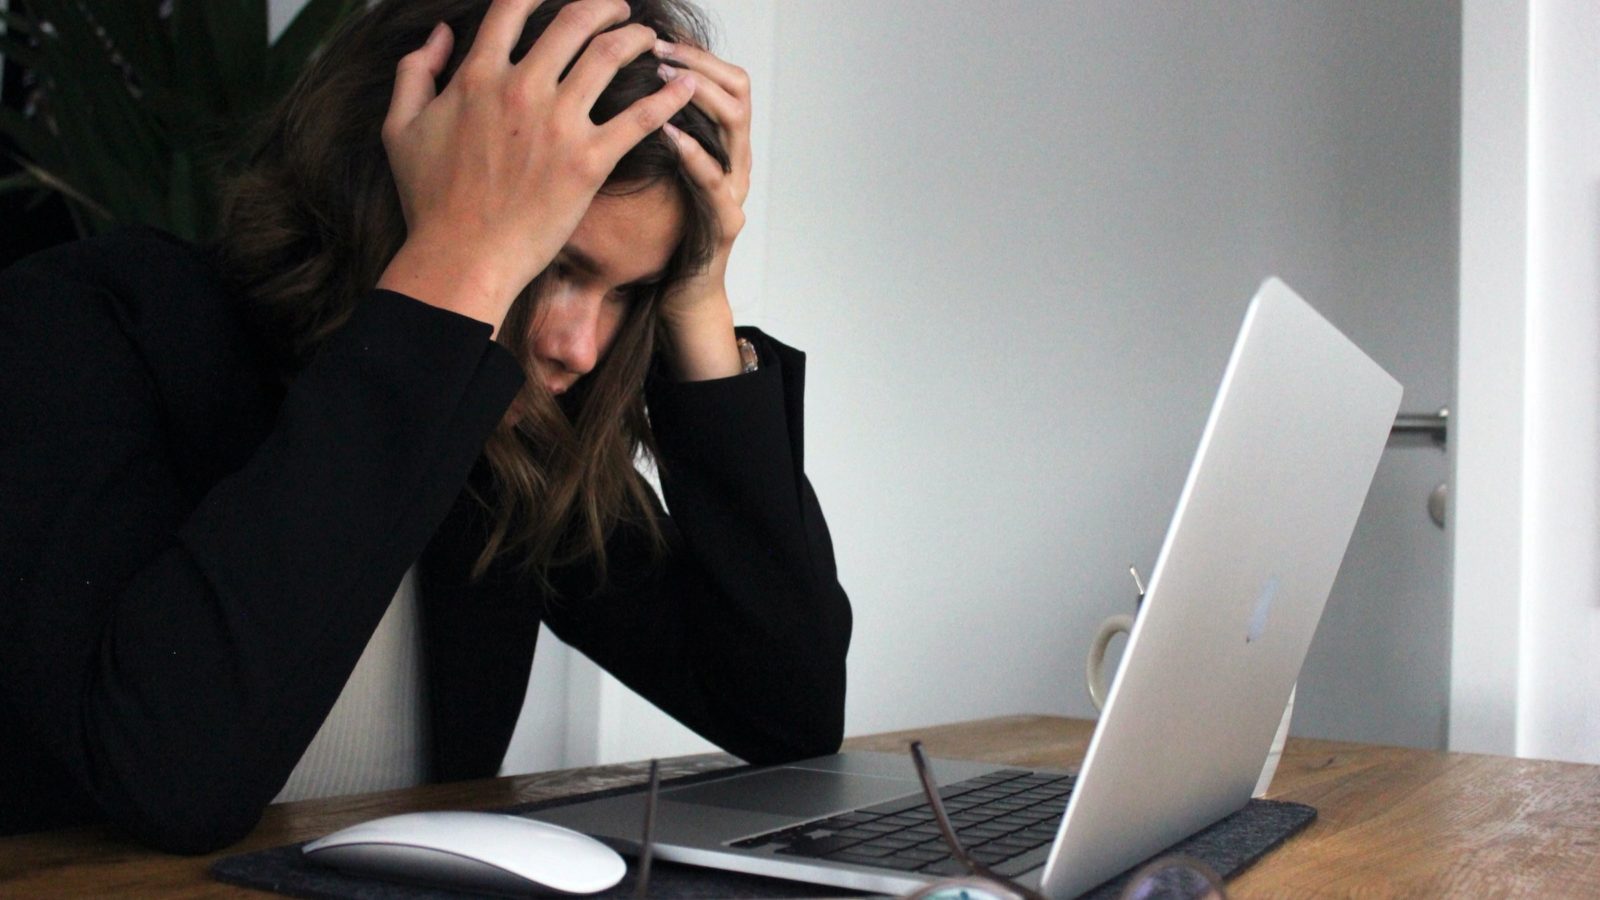 15 savjeta kako se riješiti stresa prije razgovora za posao